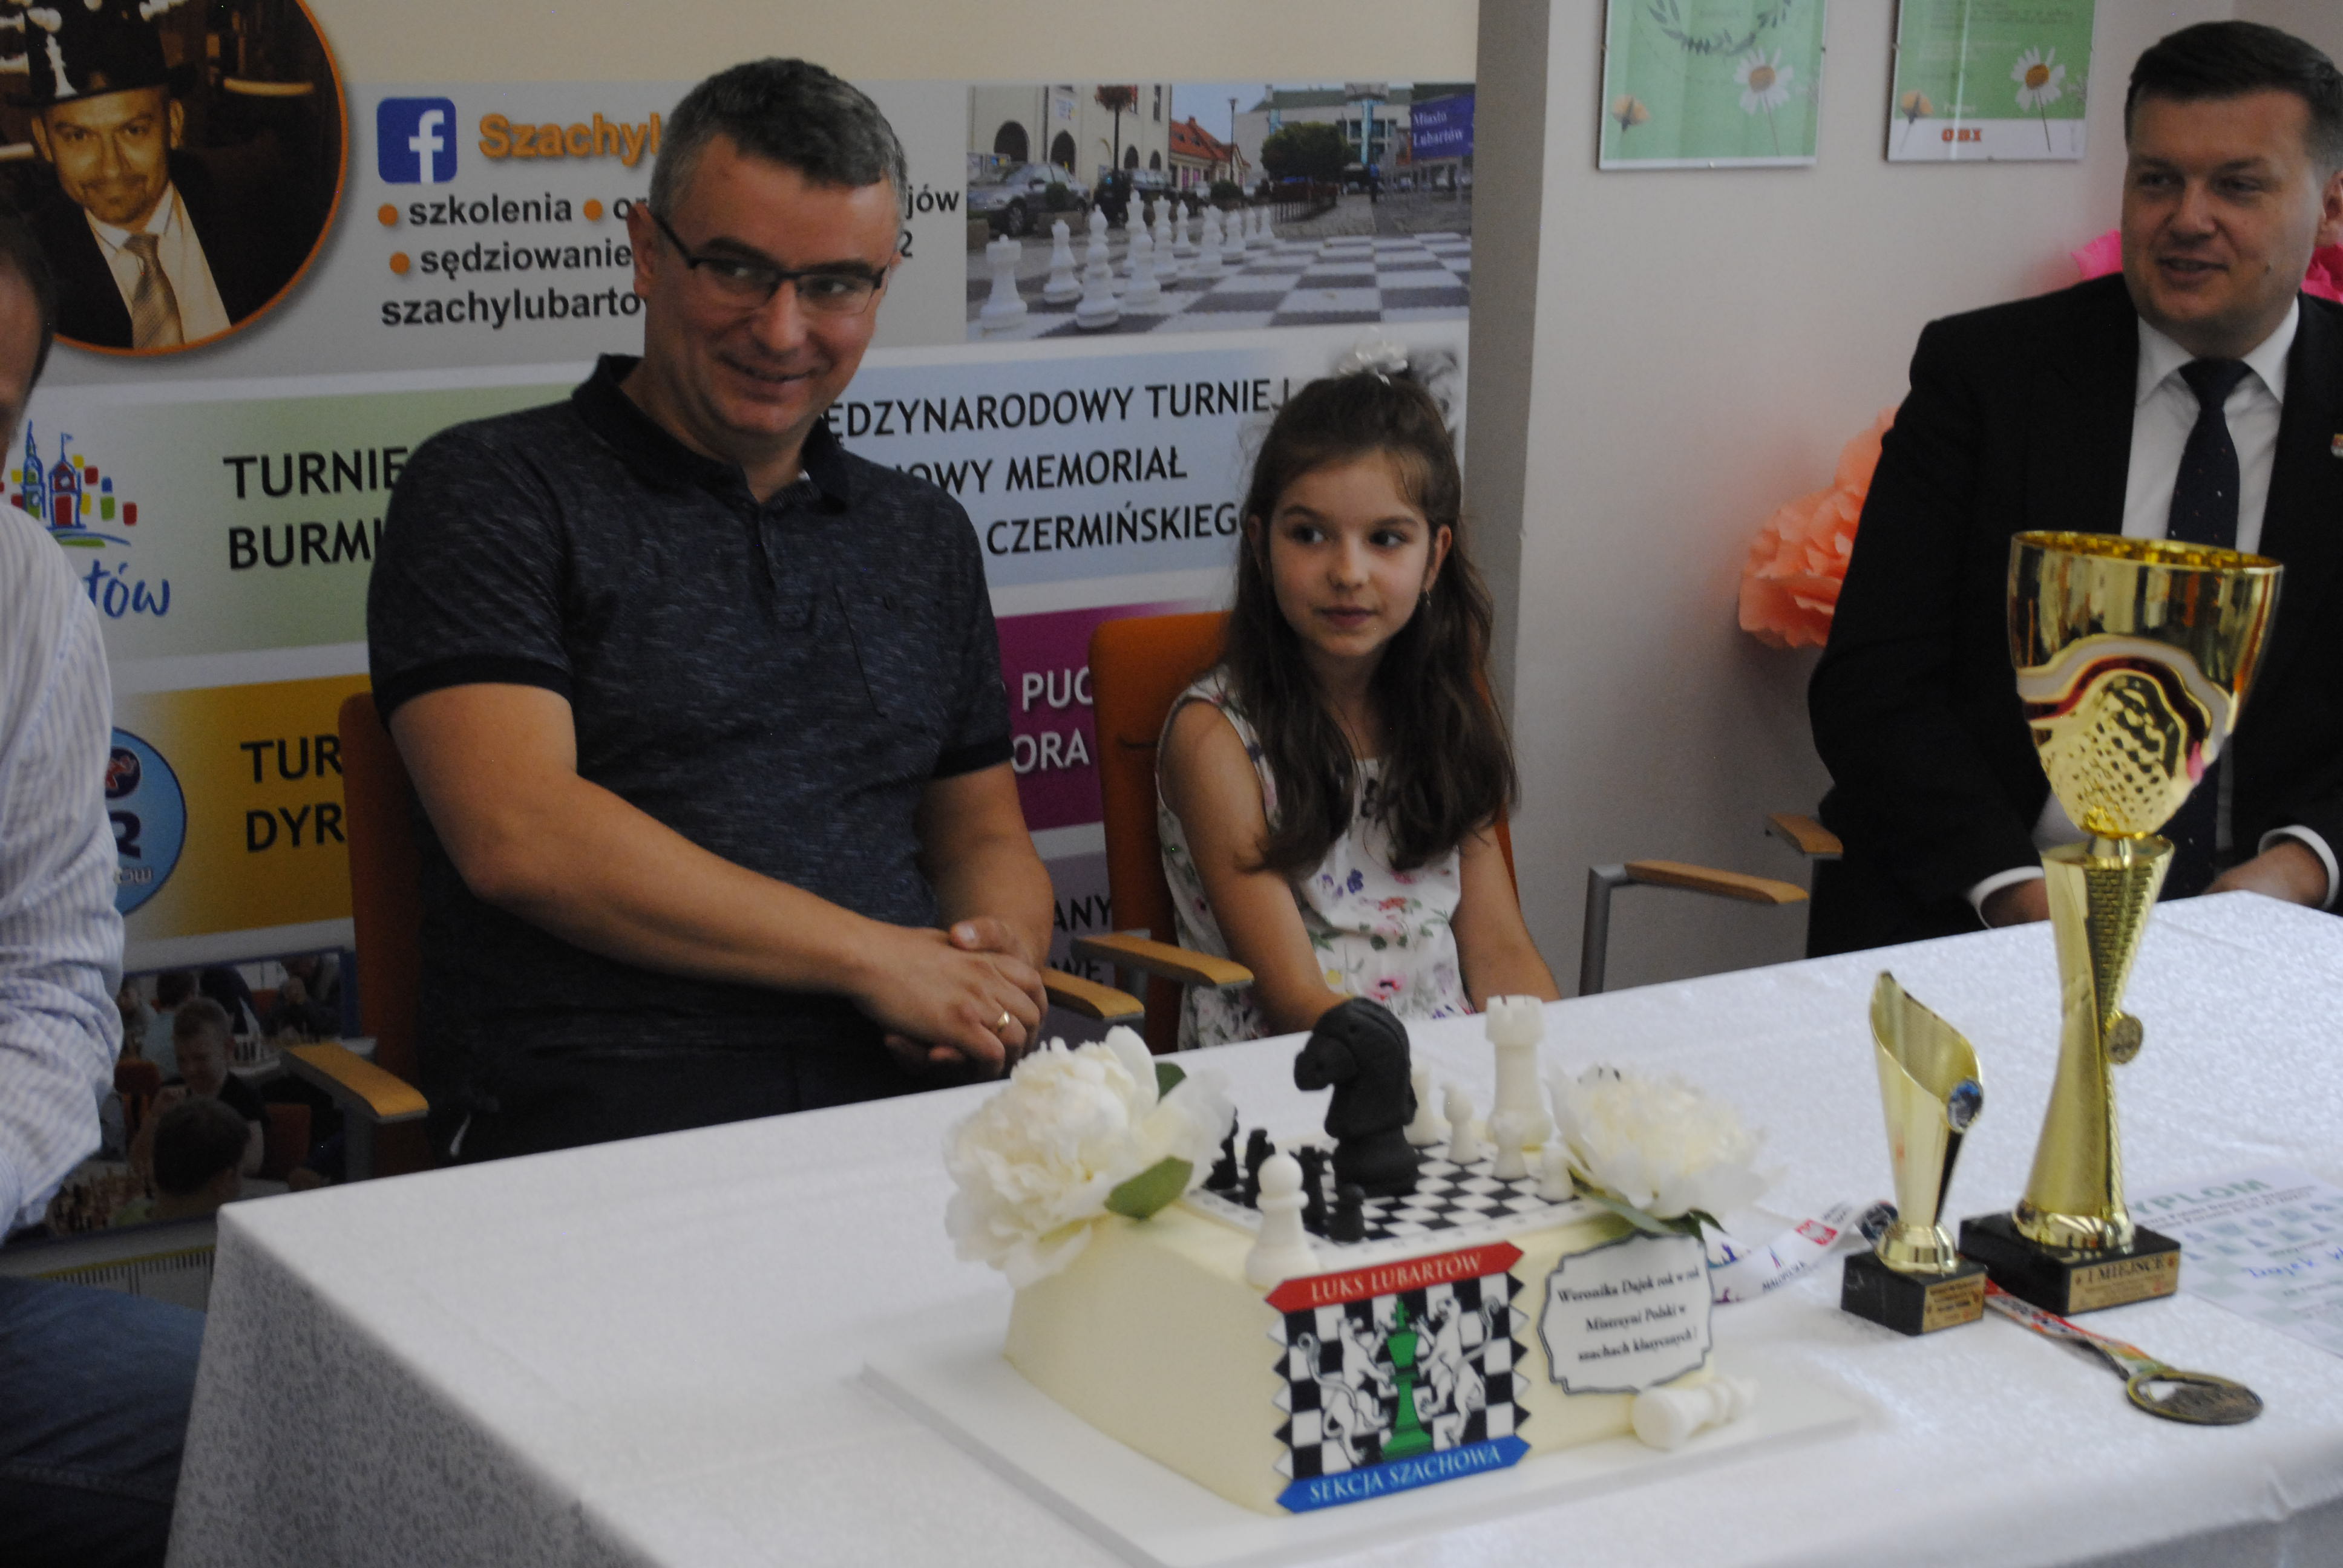 Szachowy tort dla mistrzyni szachów z Lubartowa - Zdjęcie główne